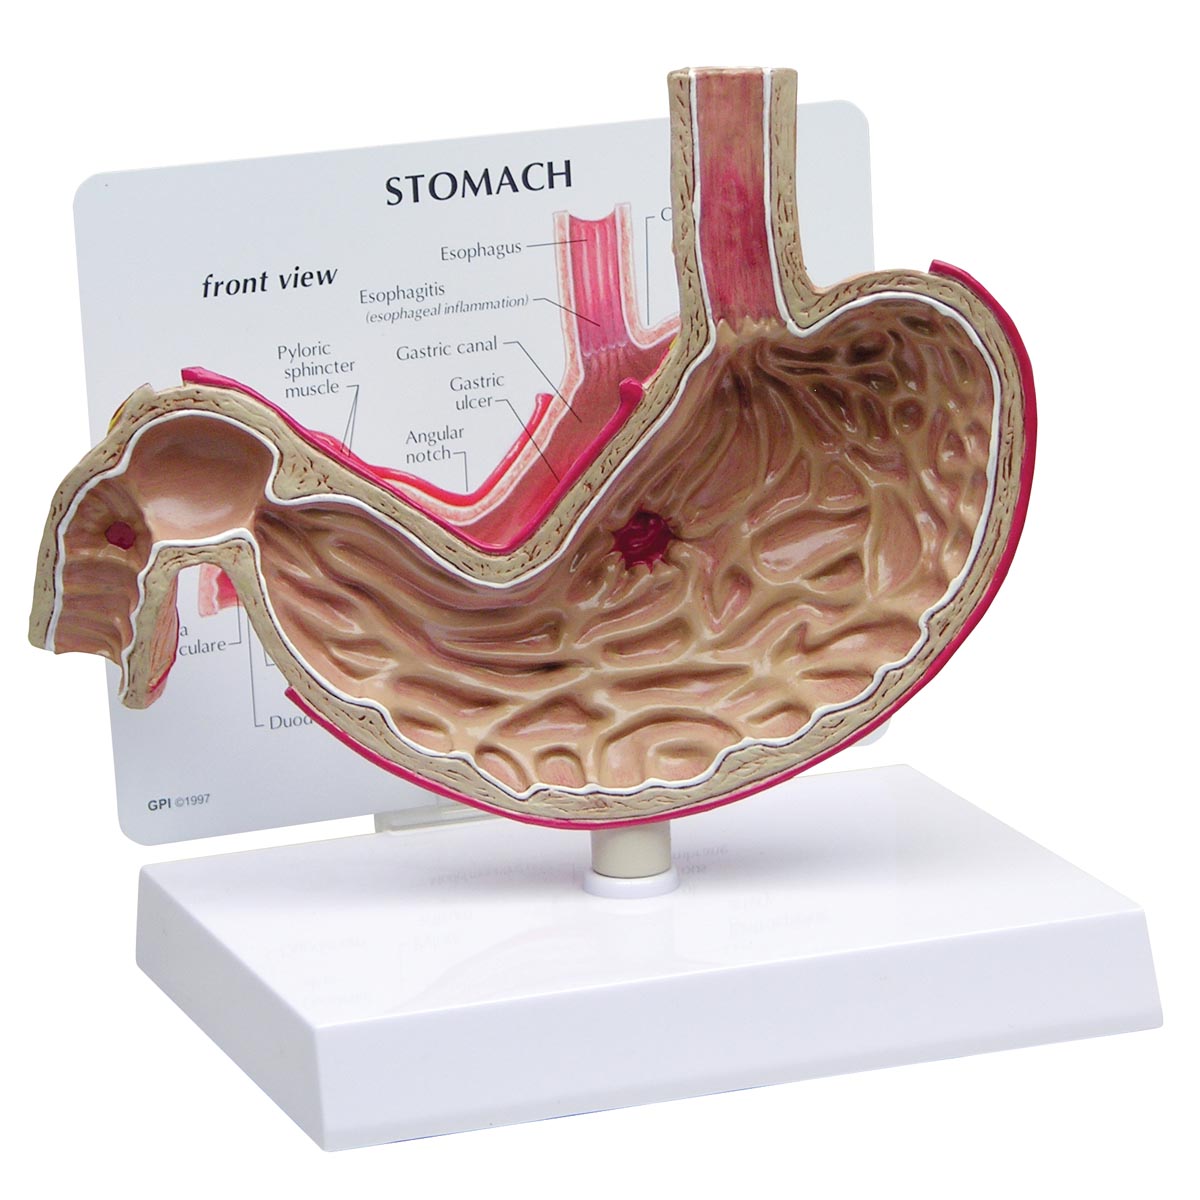 Magenmodell mit Geschwüren, Bestellnummer 1019523, 2000, GPI Anatomicals